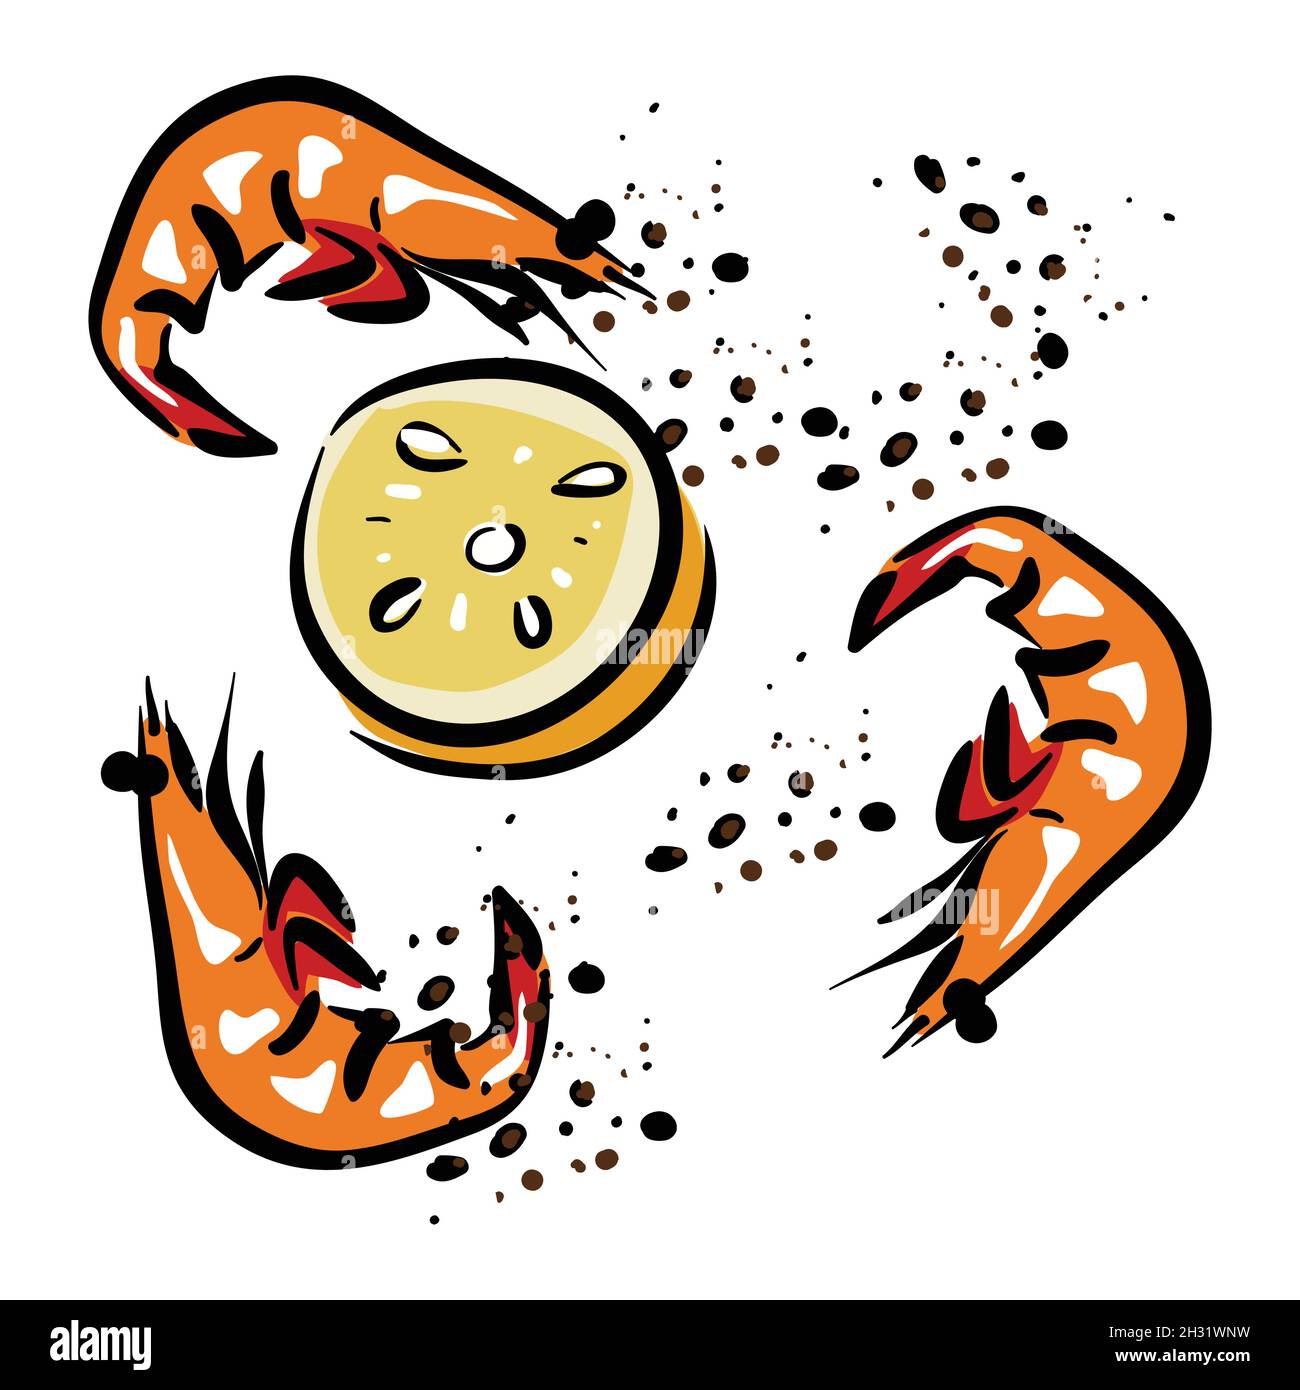 Shrimp and lemon vector illustration Stock Vector